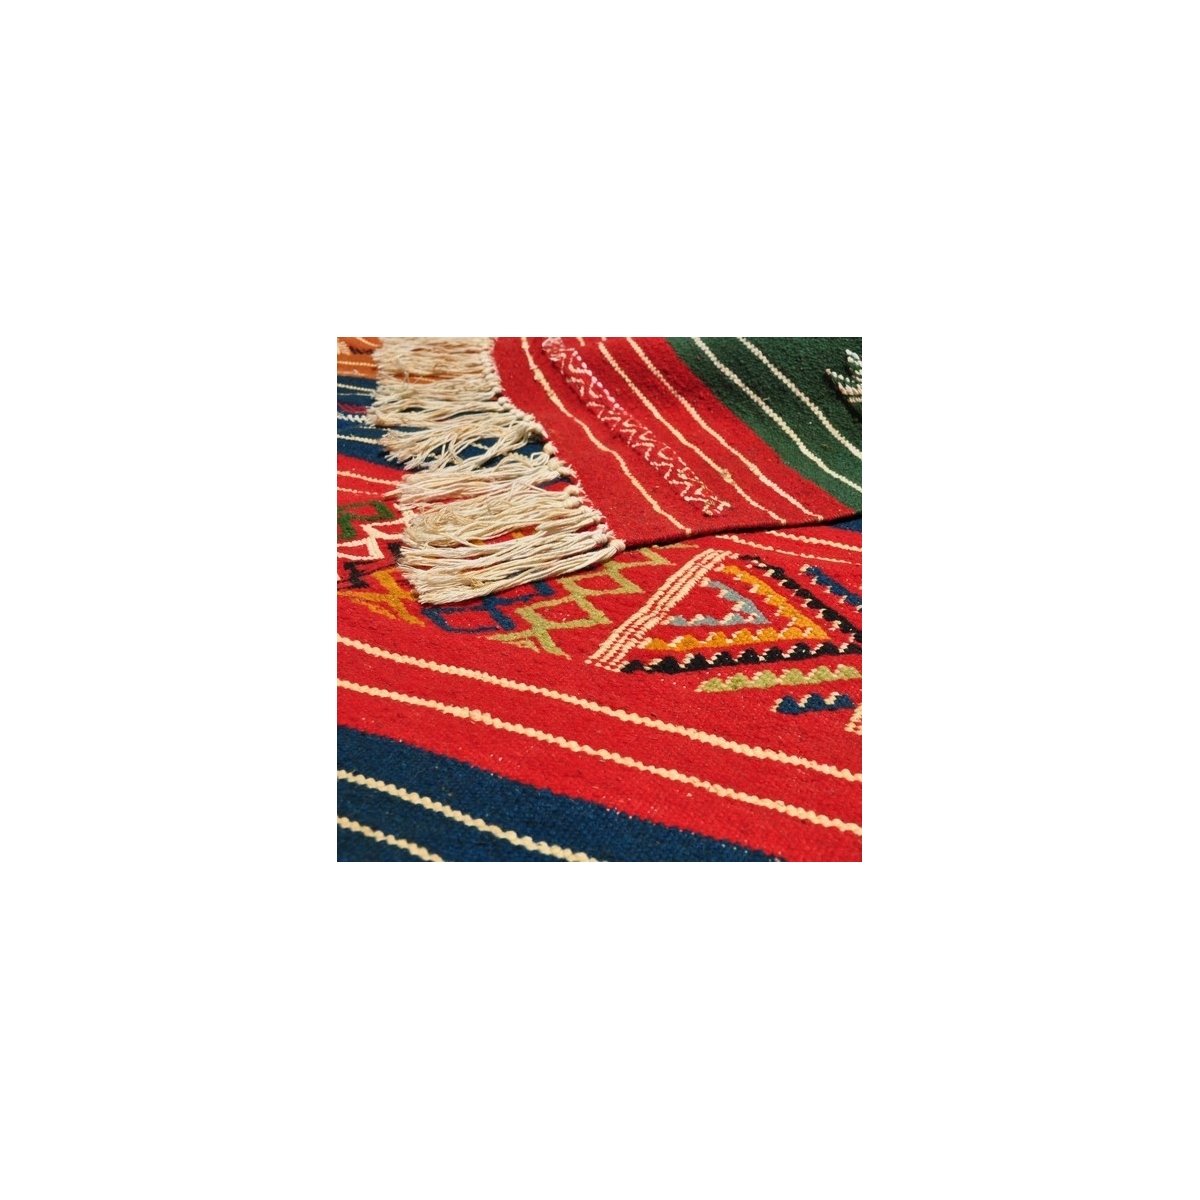 tappeto berbero Tappeto Kilim Mateur 115x200 Multicolore (Fatto a mano, Lana) Tappeto kilim tunisino, in stile marocchino. Tappe